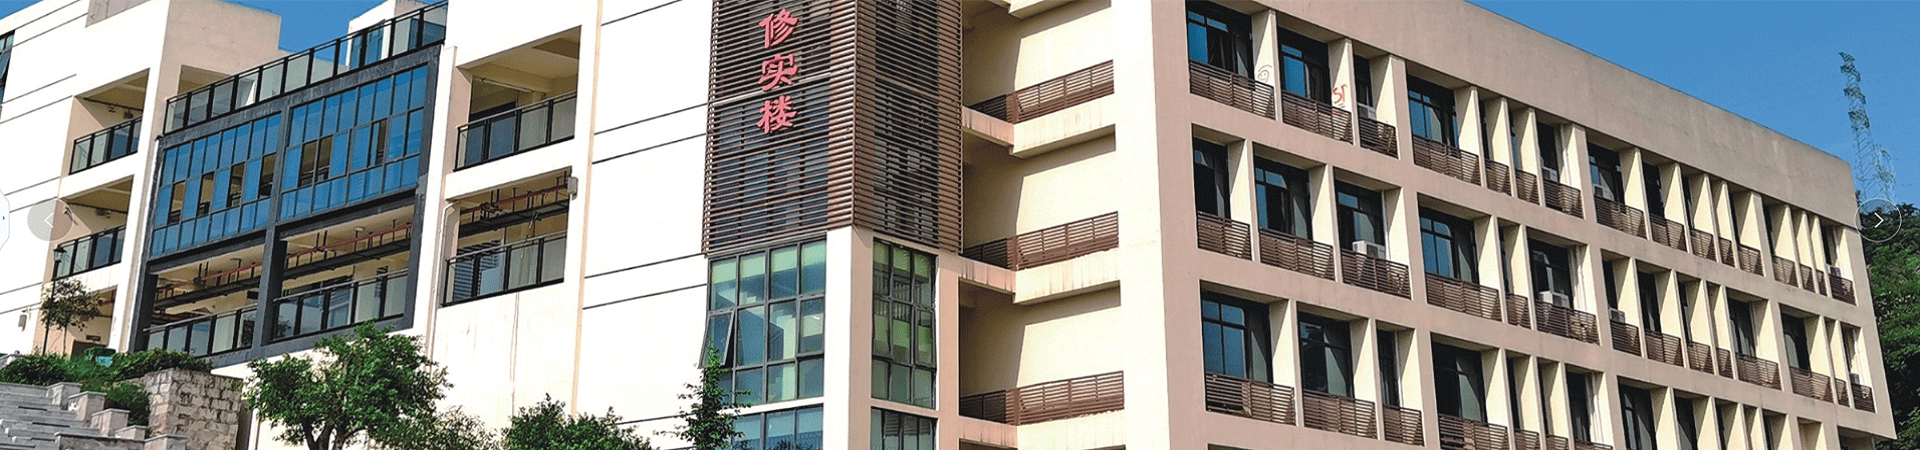 重庆市轻工业学校教学楼图片